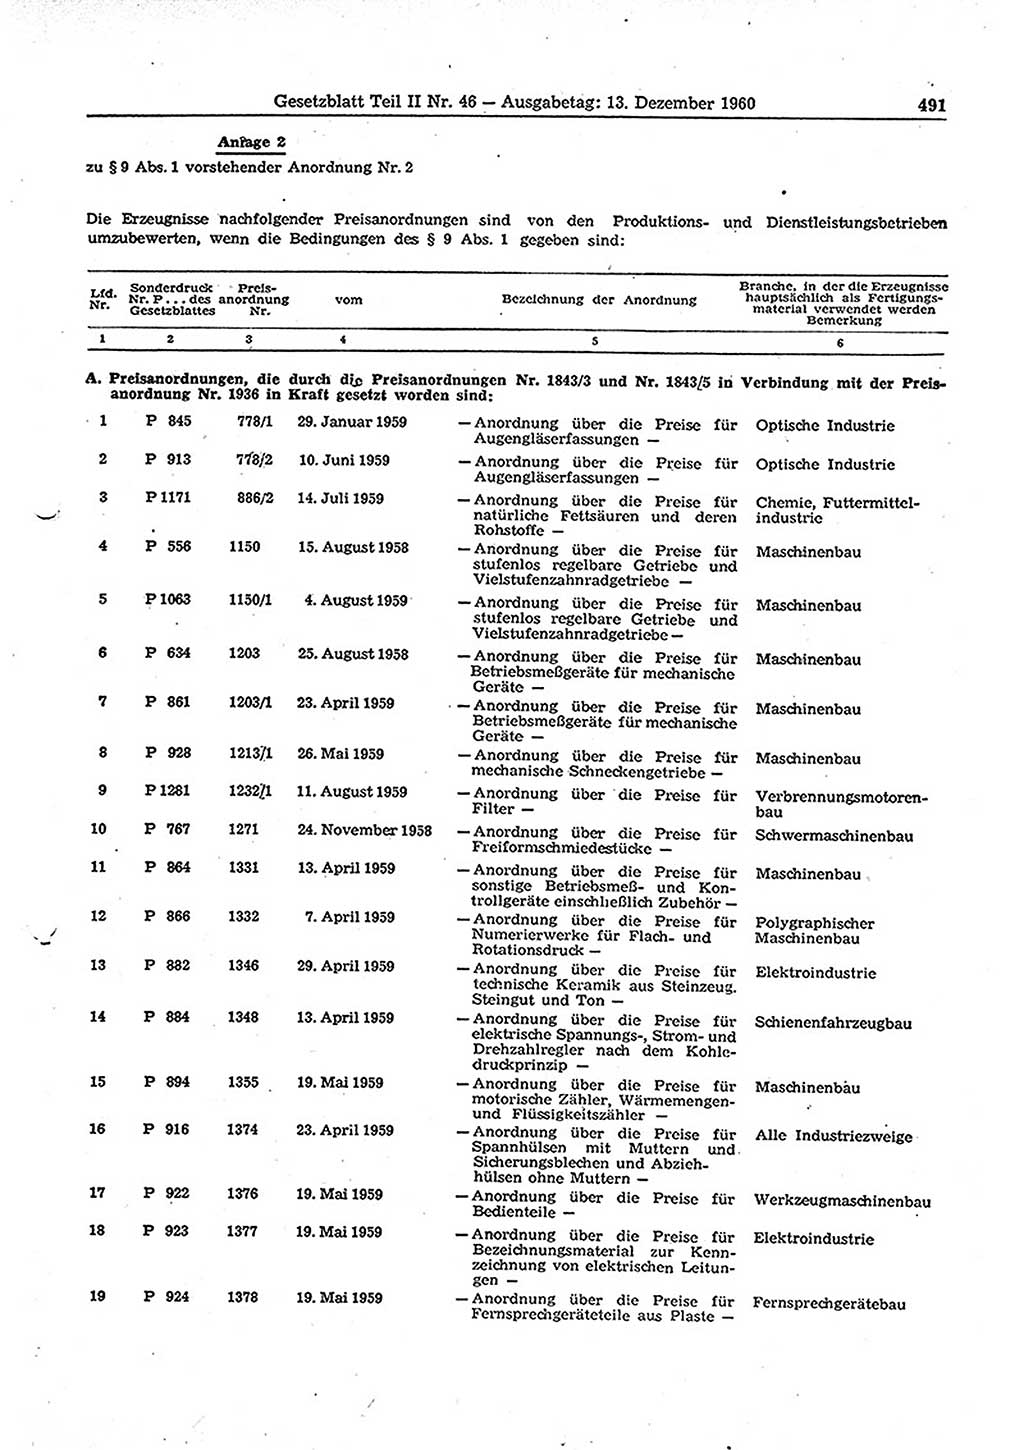 Gesetzblatt (GBl.) der Deutschen Demokratischen Republik (DDR) Teil ⅠⅠ 1960, Seite 491 (GBl. DDR ⅠⅠ 1960, S. 491)